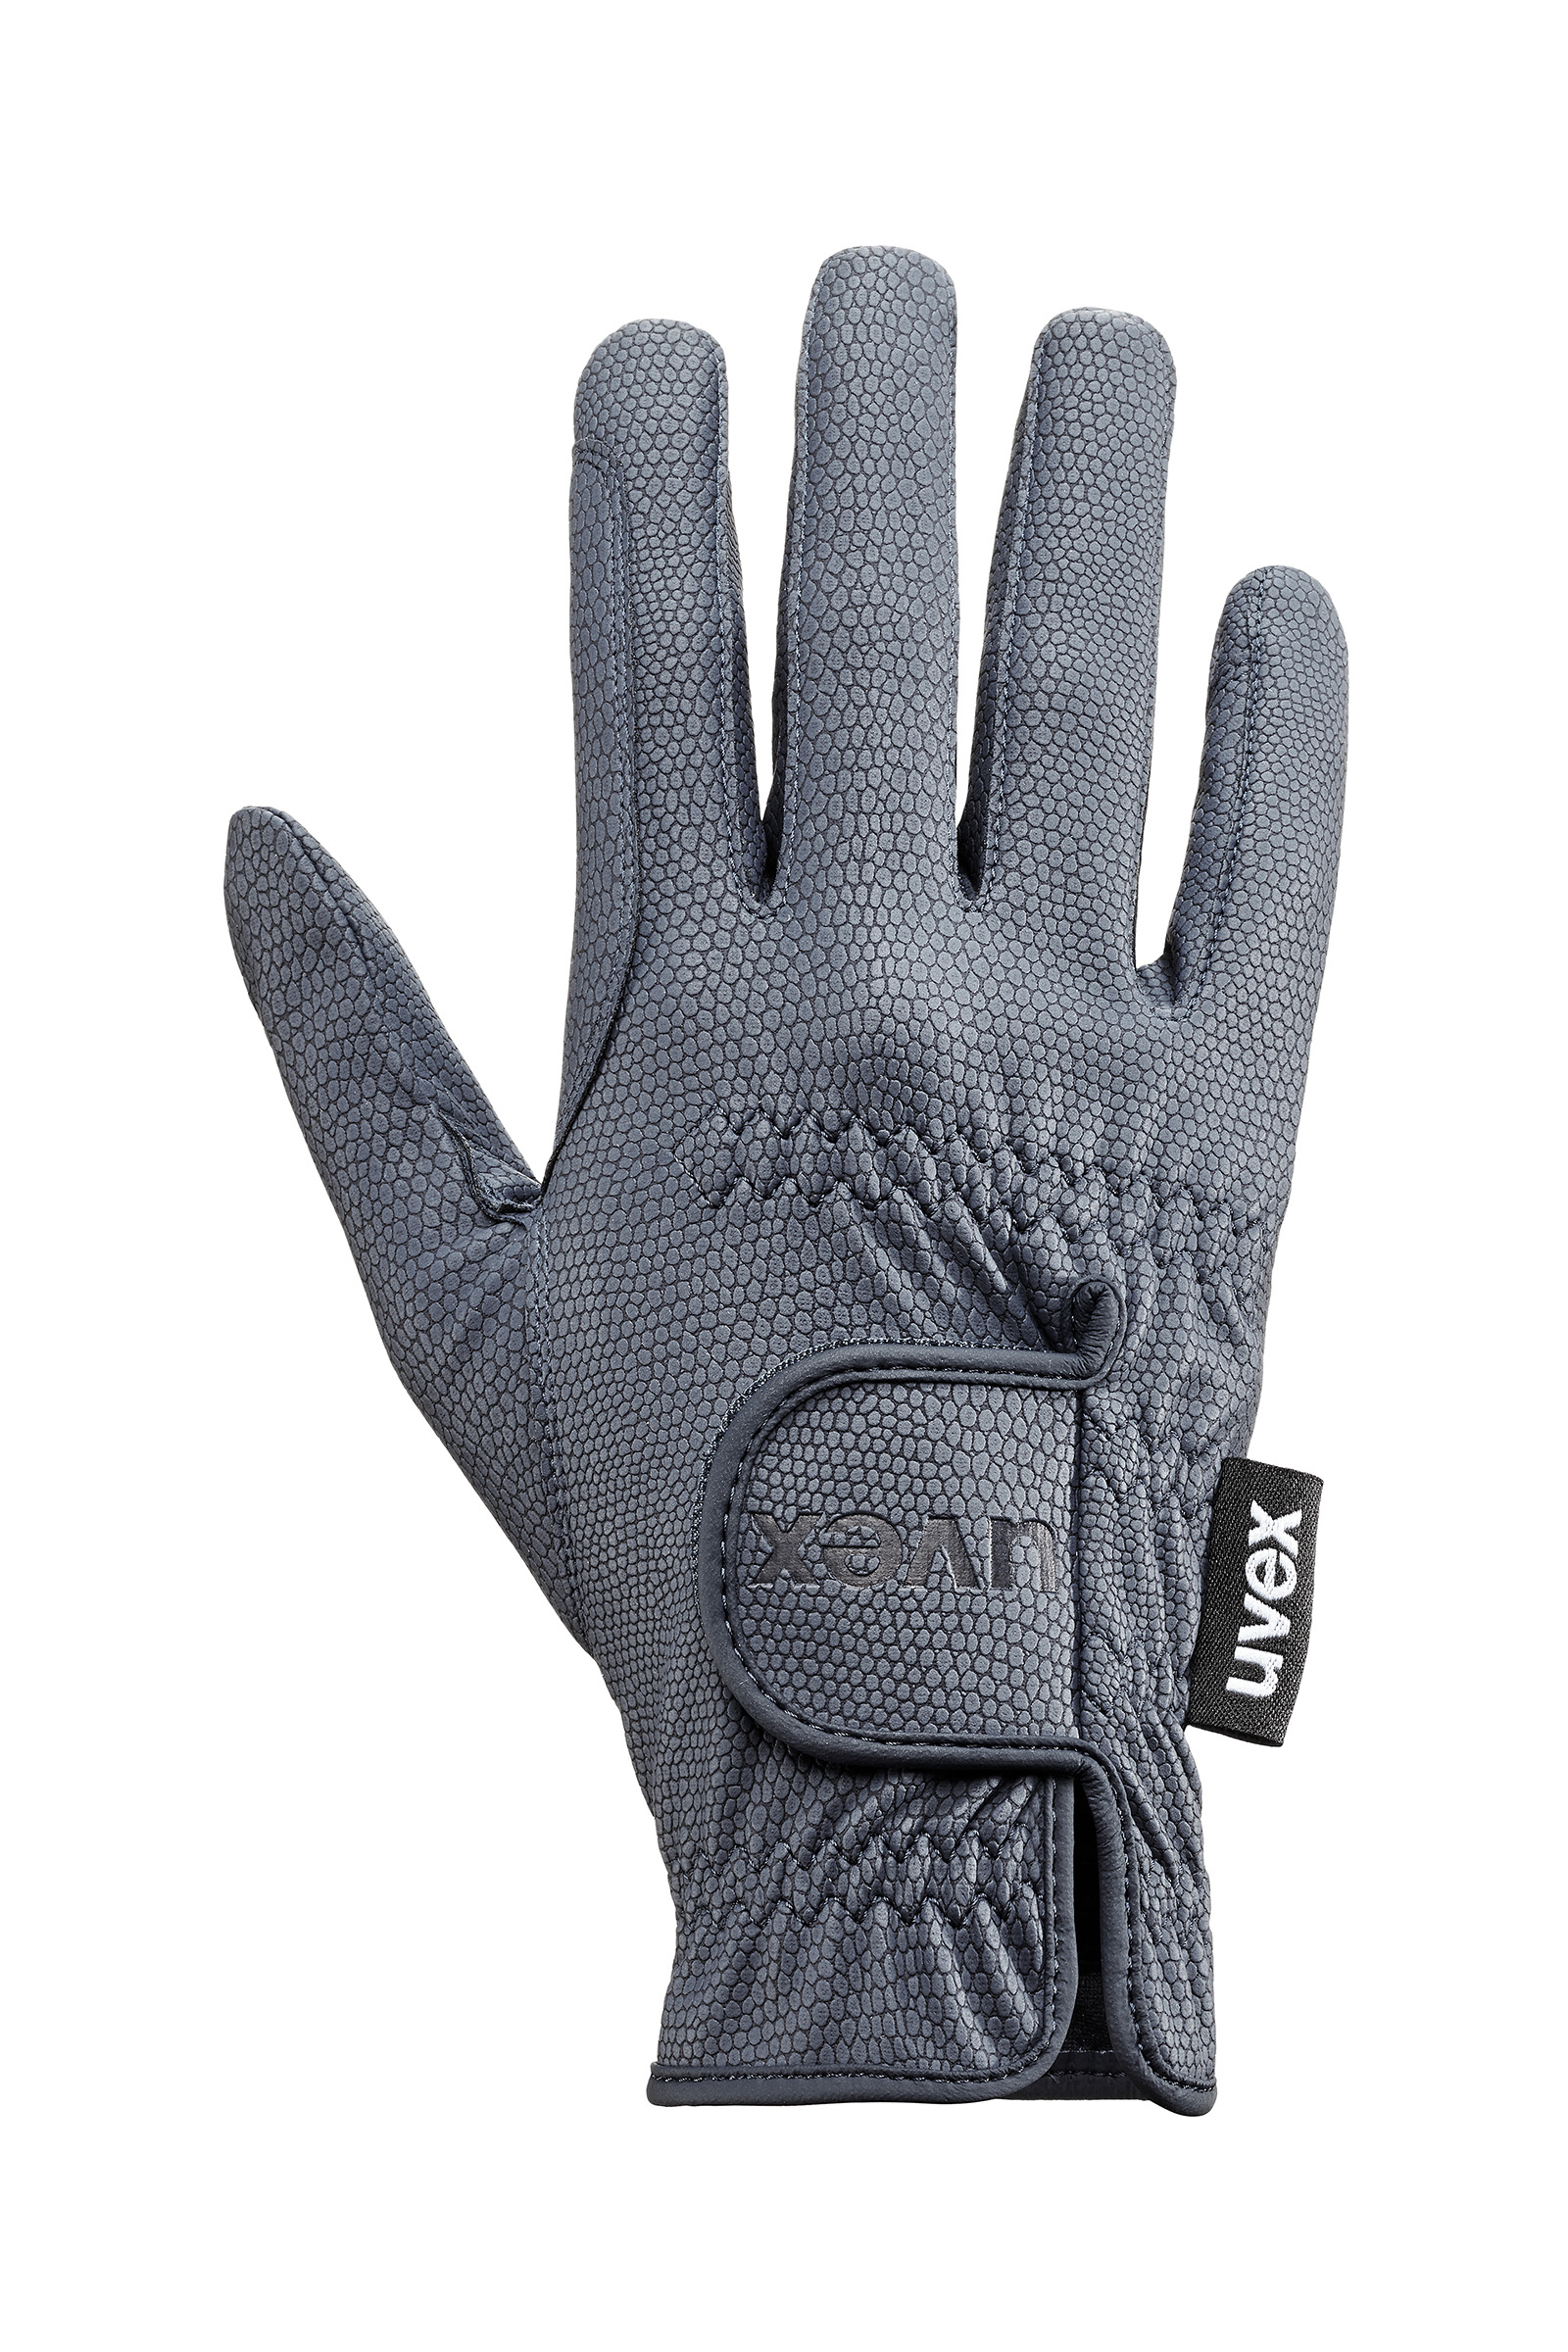 uvex glove clip avec mousqueton pour suspendre des gants